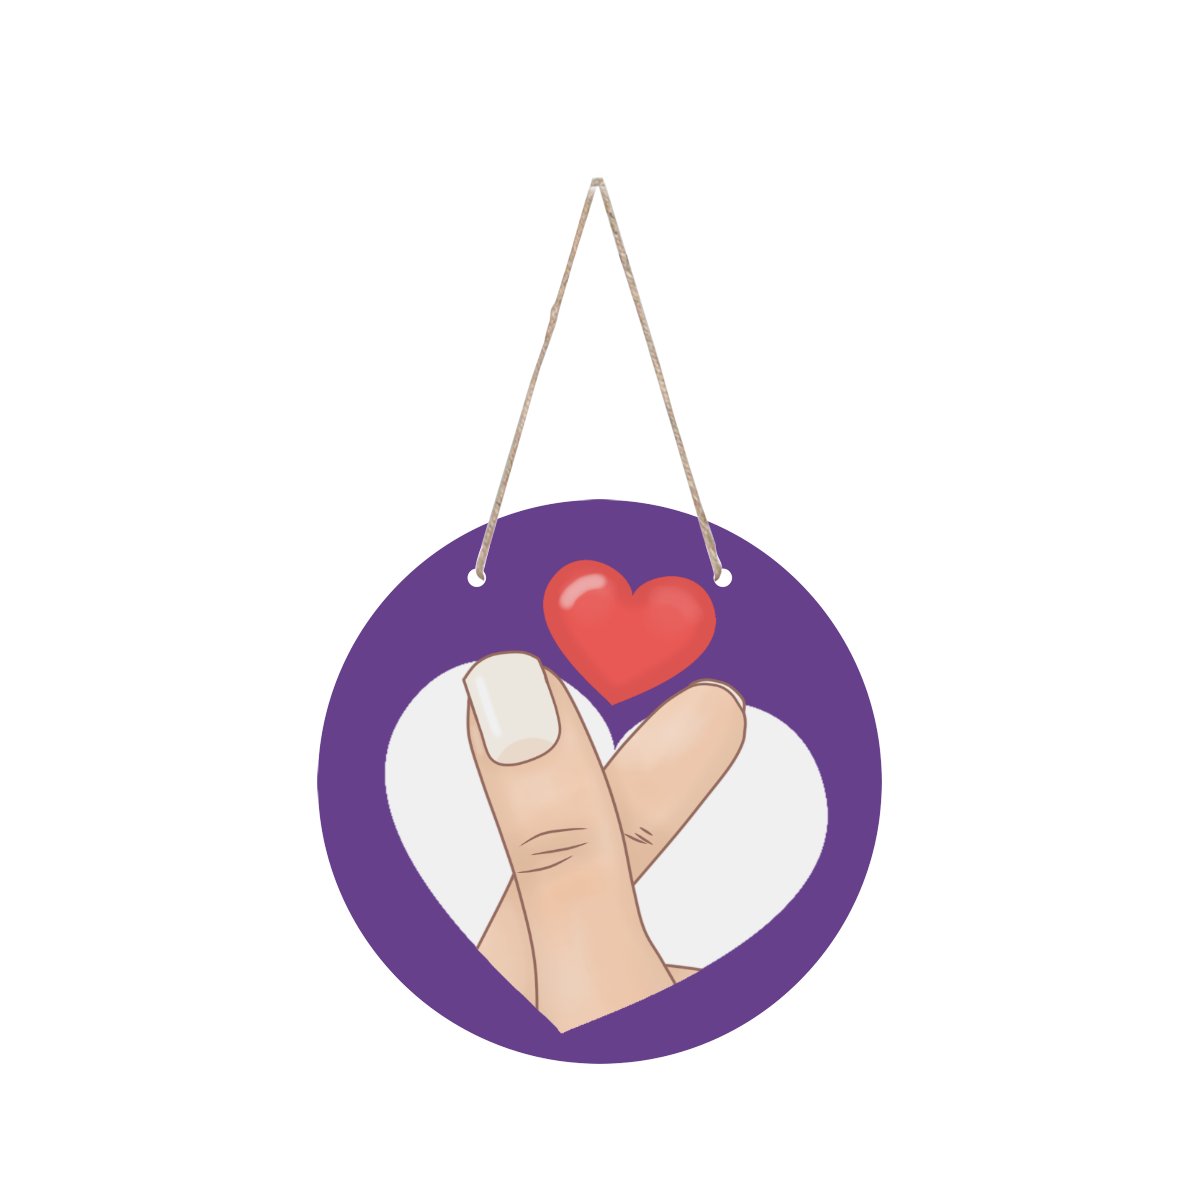 Finger Heart on Purple Round Wood Door Hanging Sign